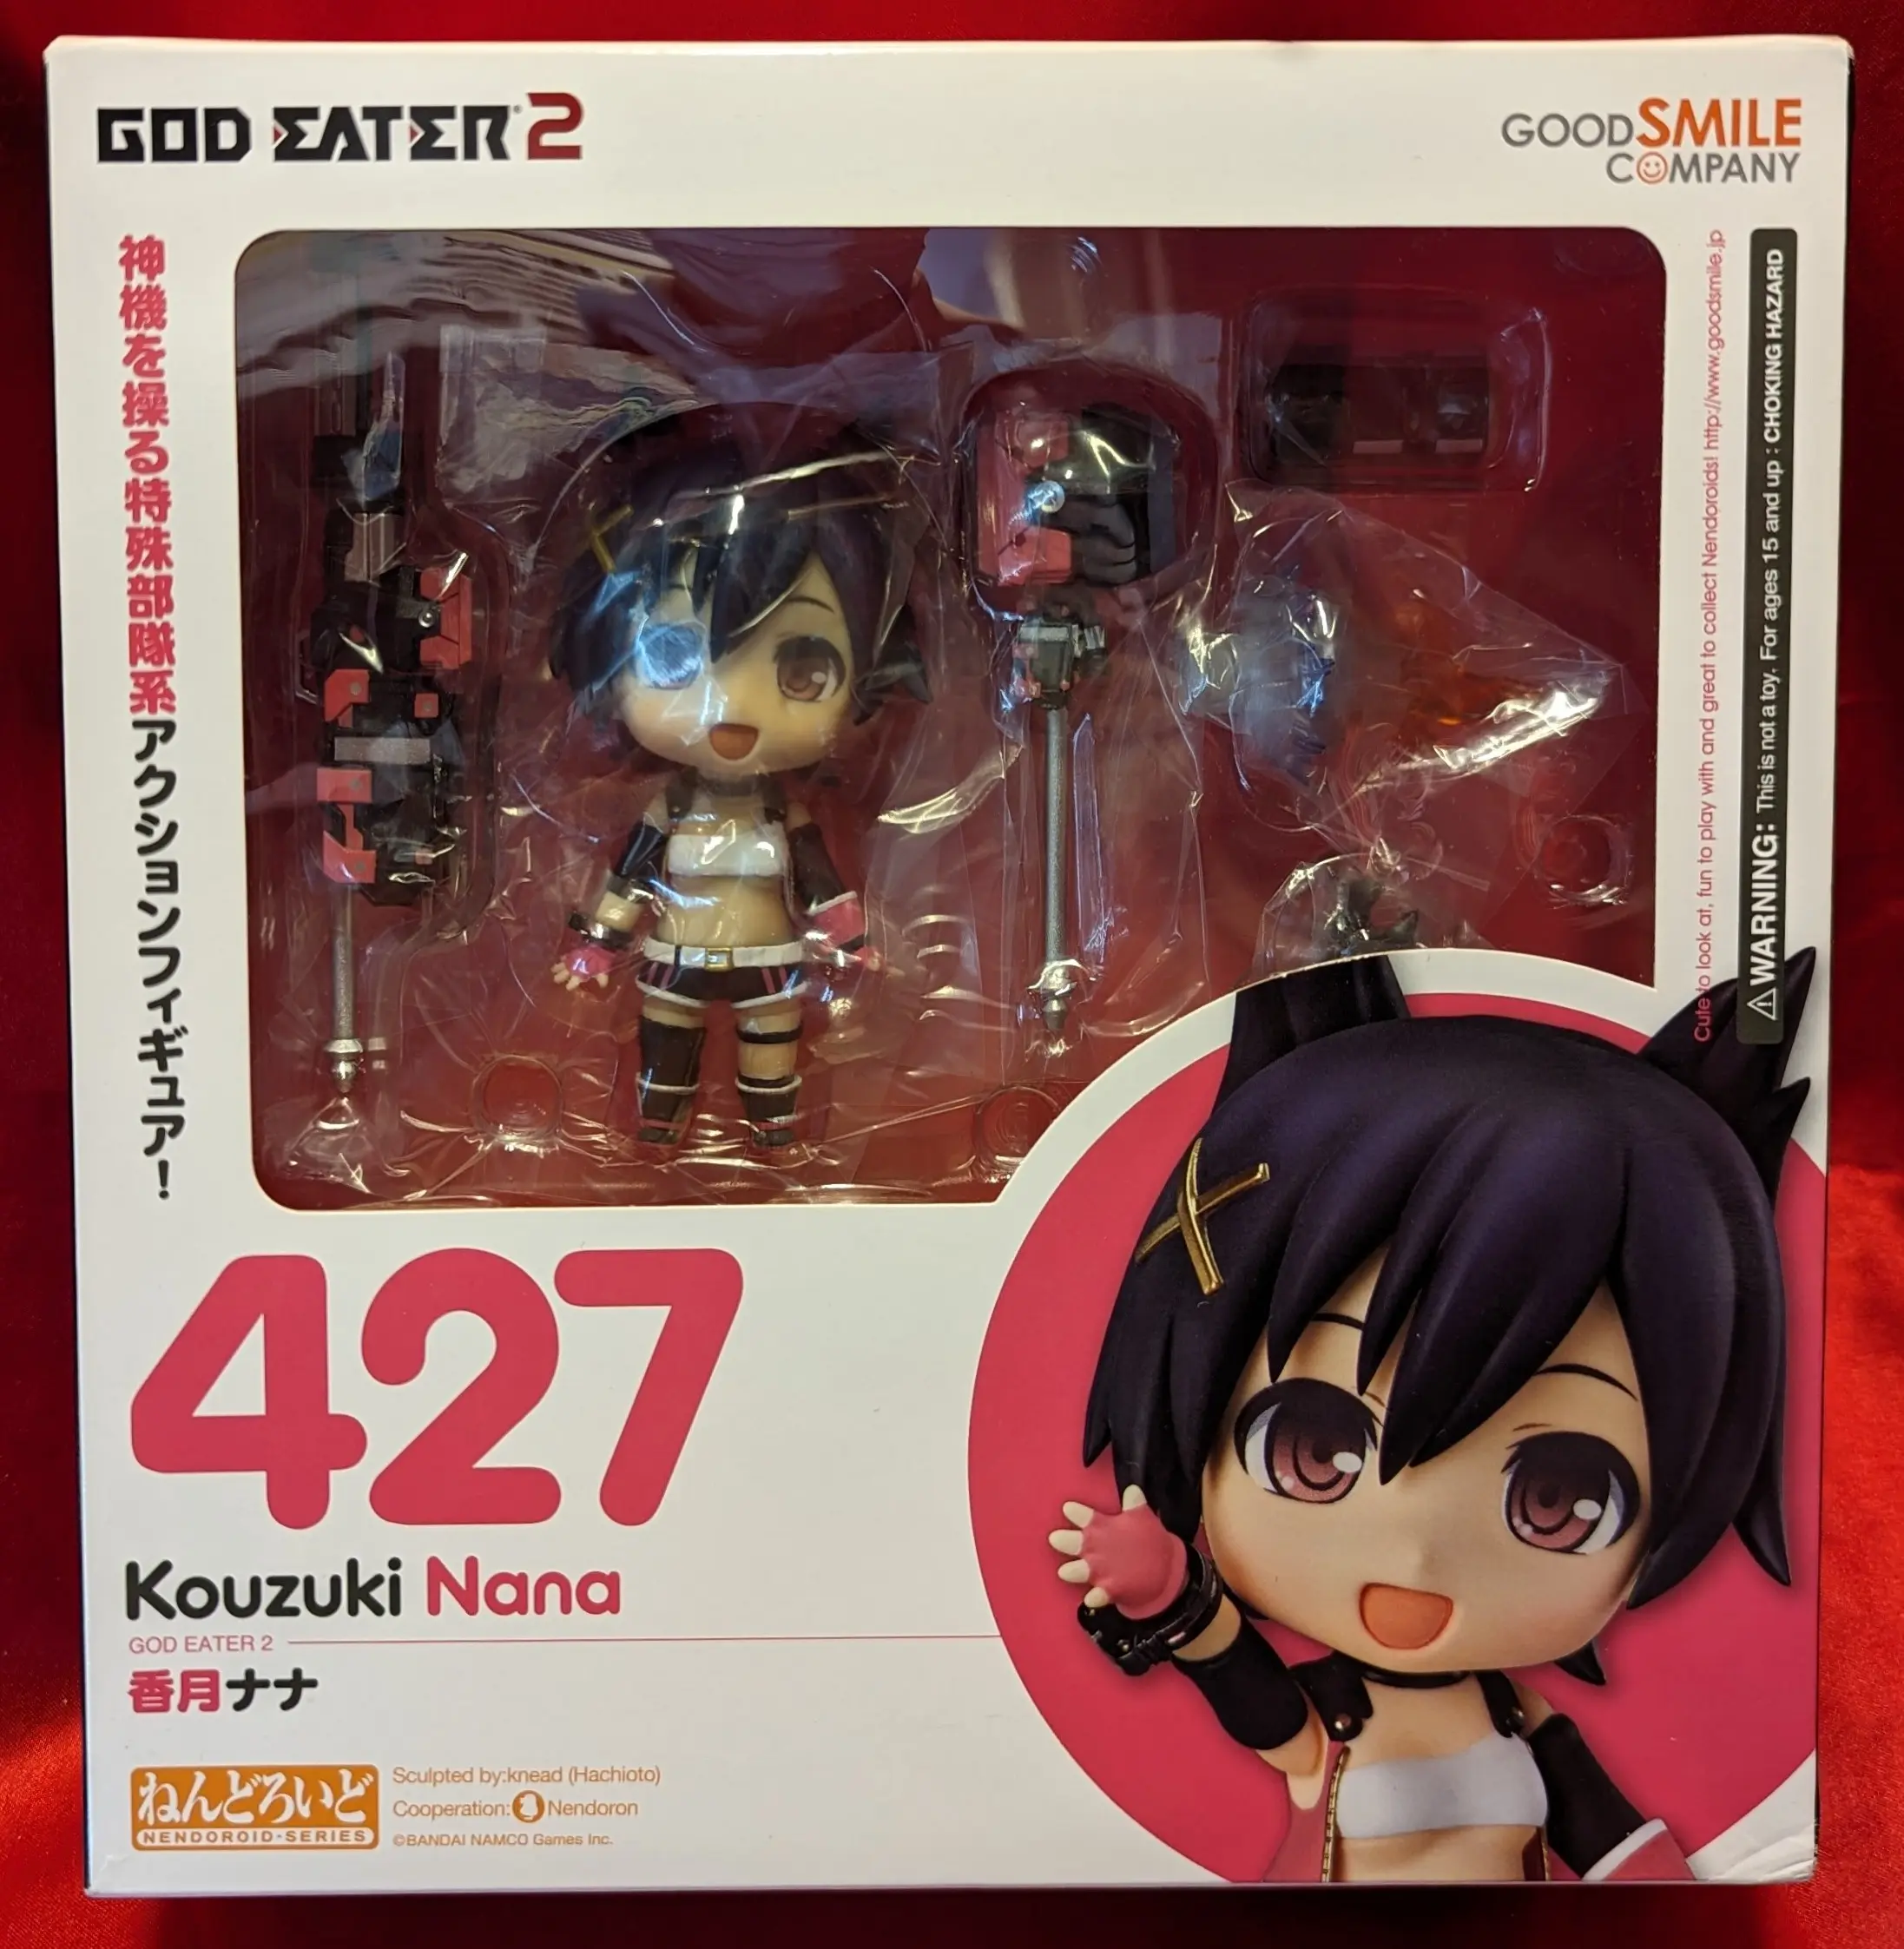 Nendoroid - God Eater / Kazuki Nana